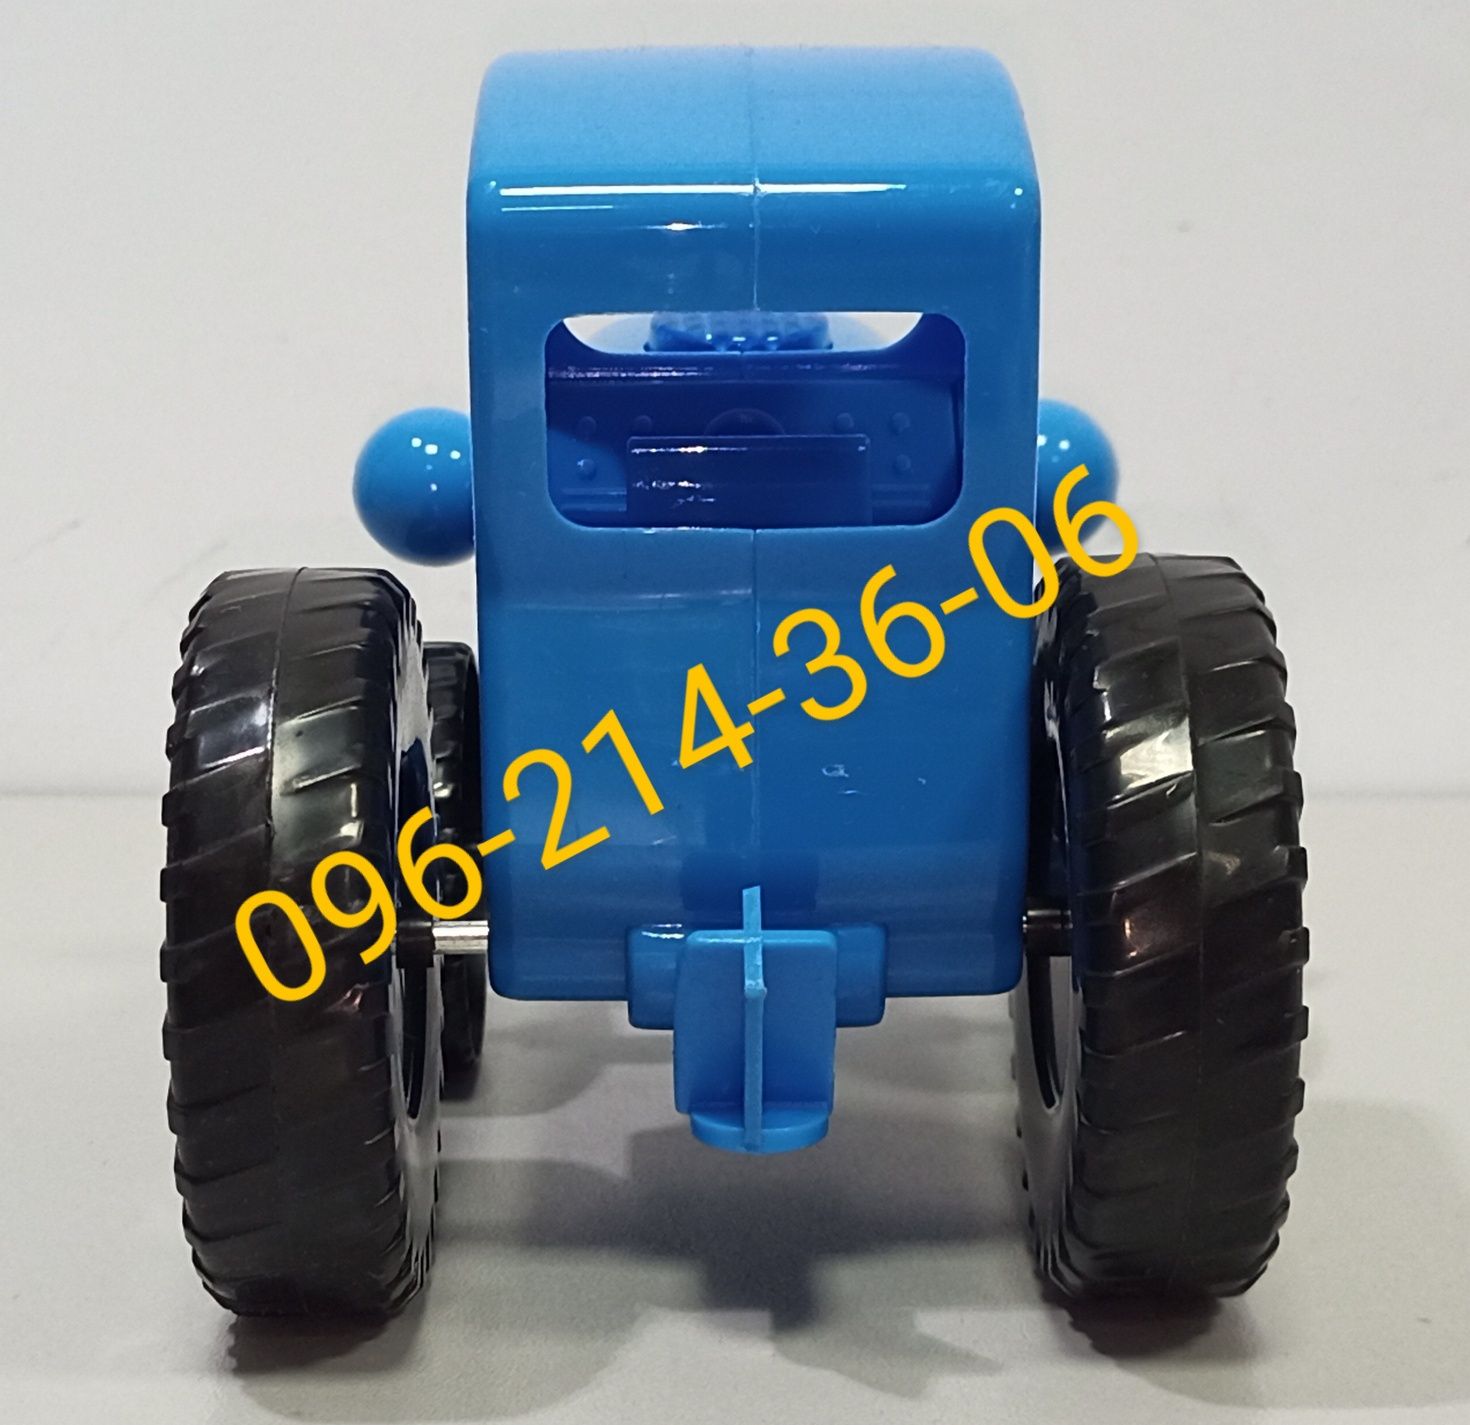 Детская музыкальная игрушка "Синий трактор" с украинской озвучкой.